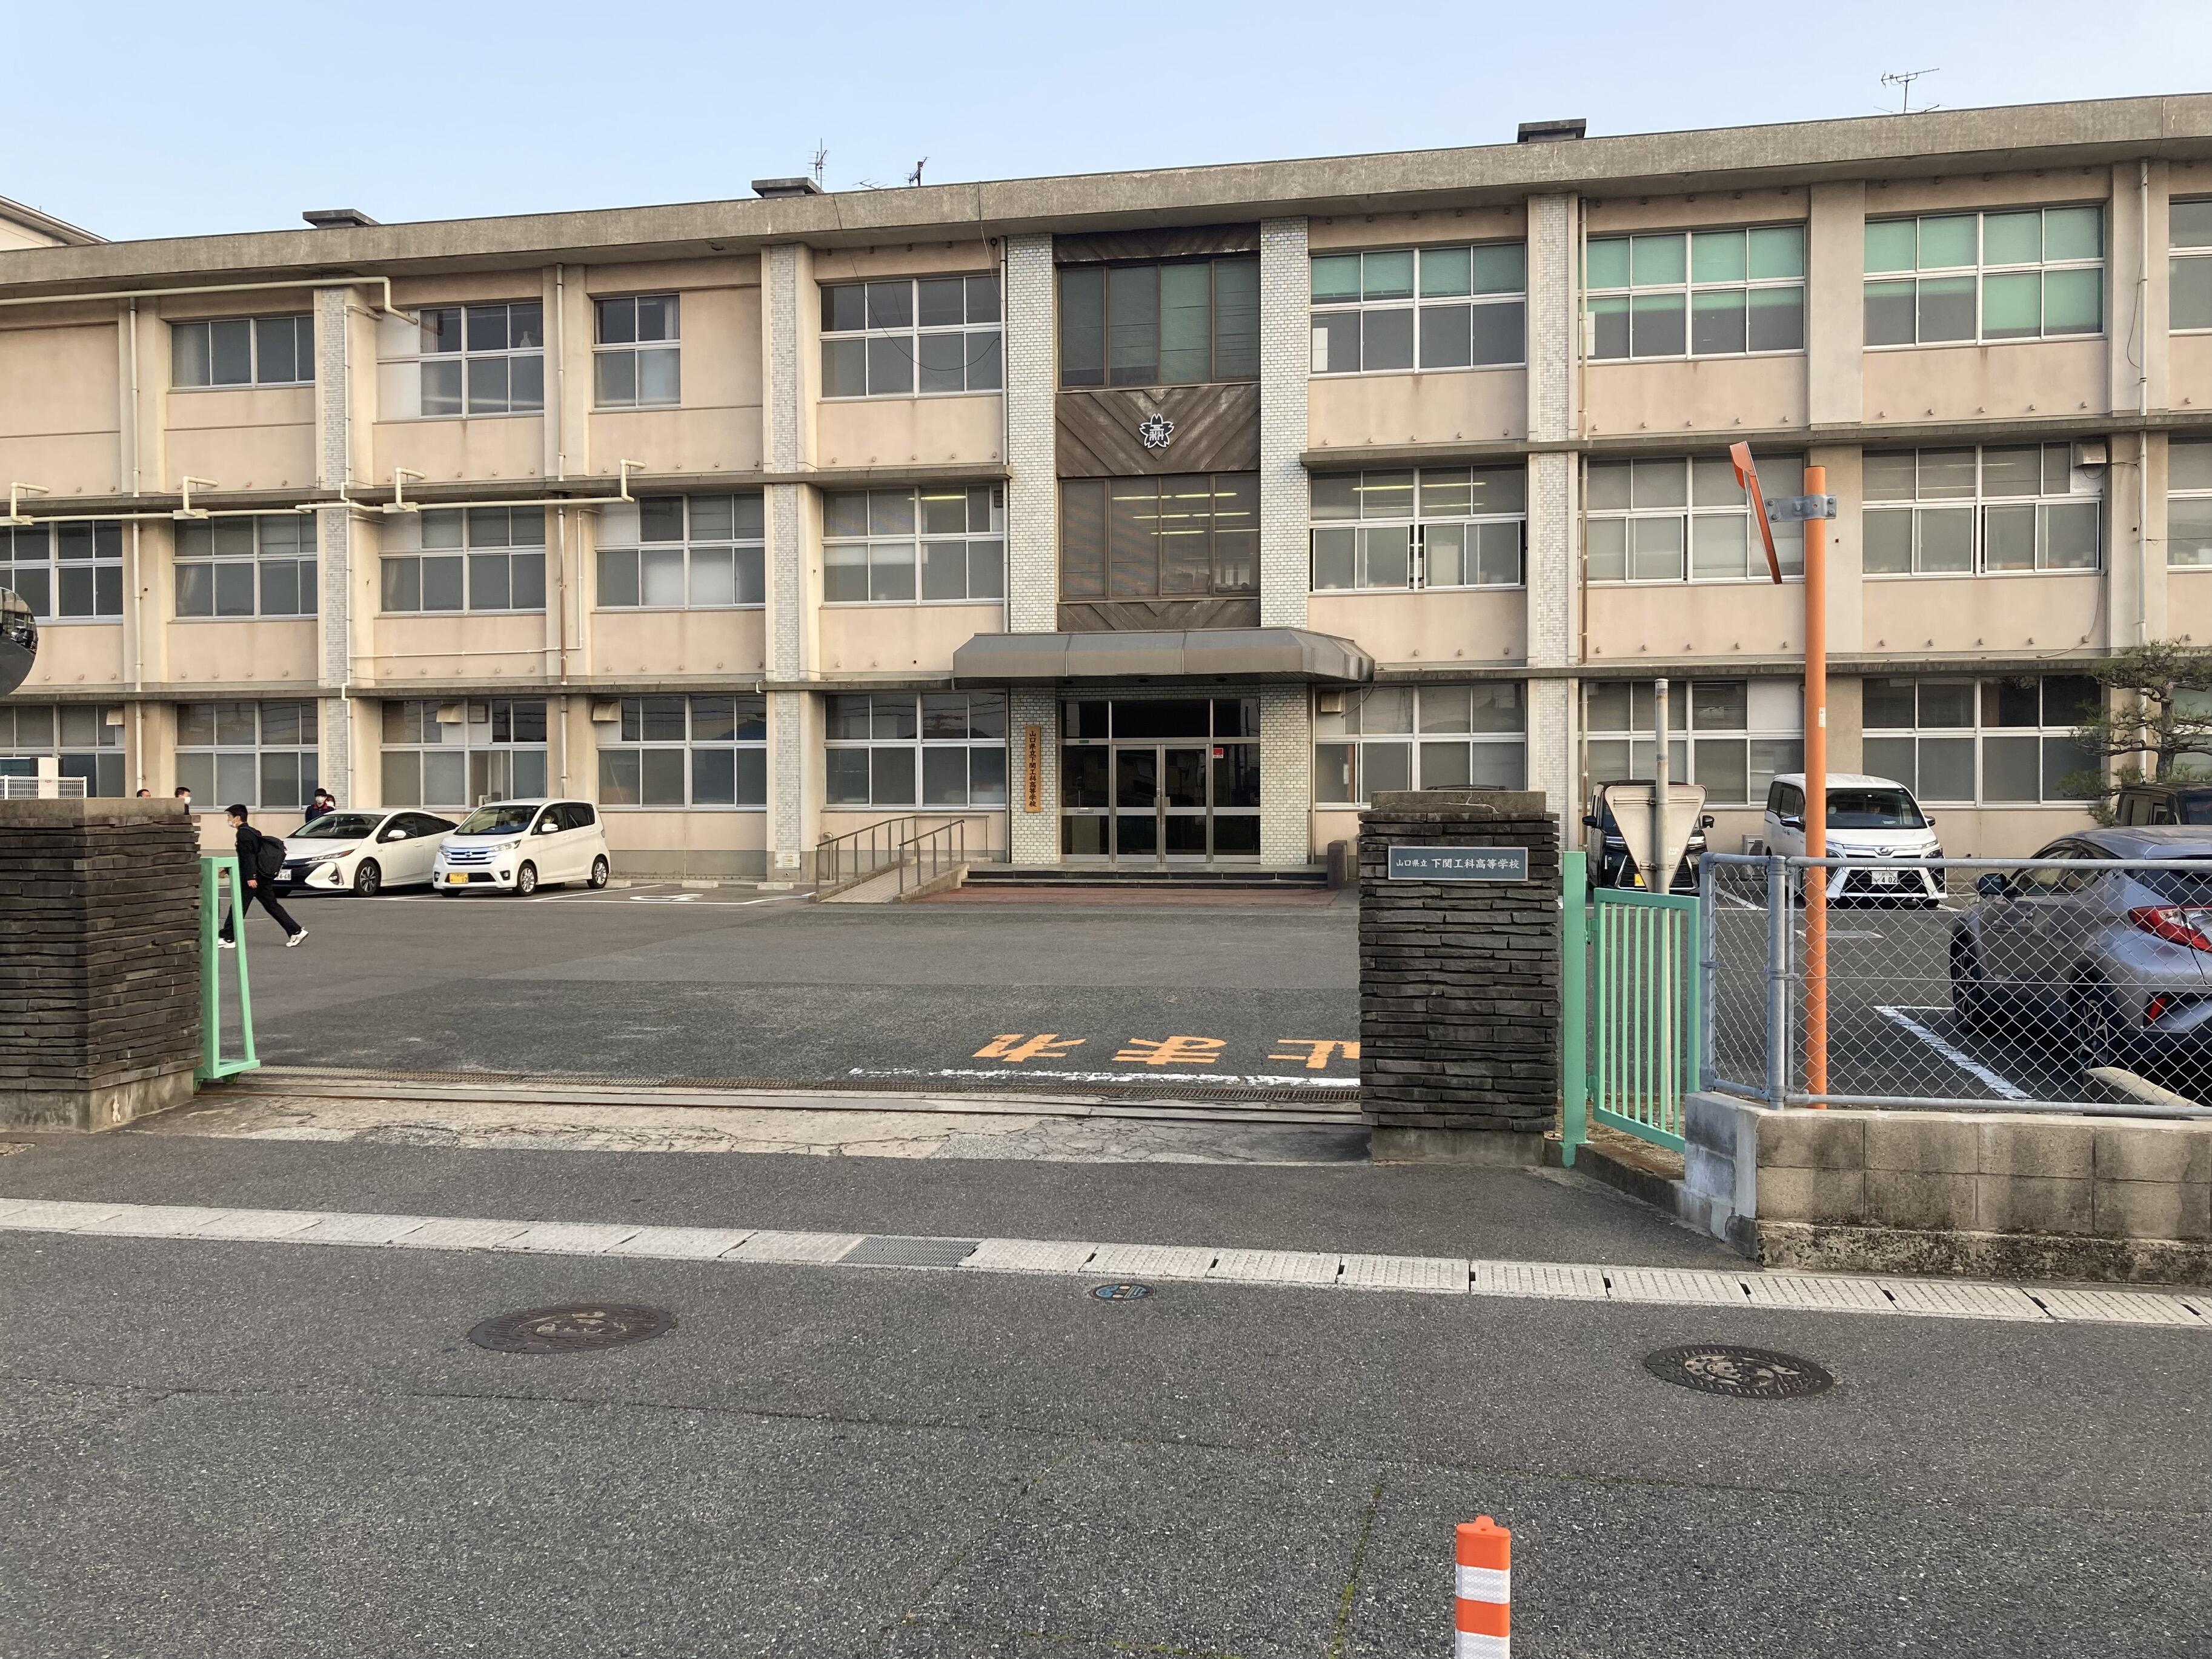 山口県立下関工科高等学校 - 下関市富任町/高校 | Yahoo!マップ